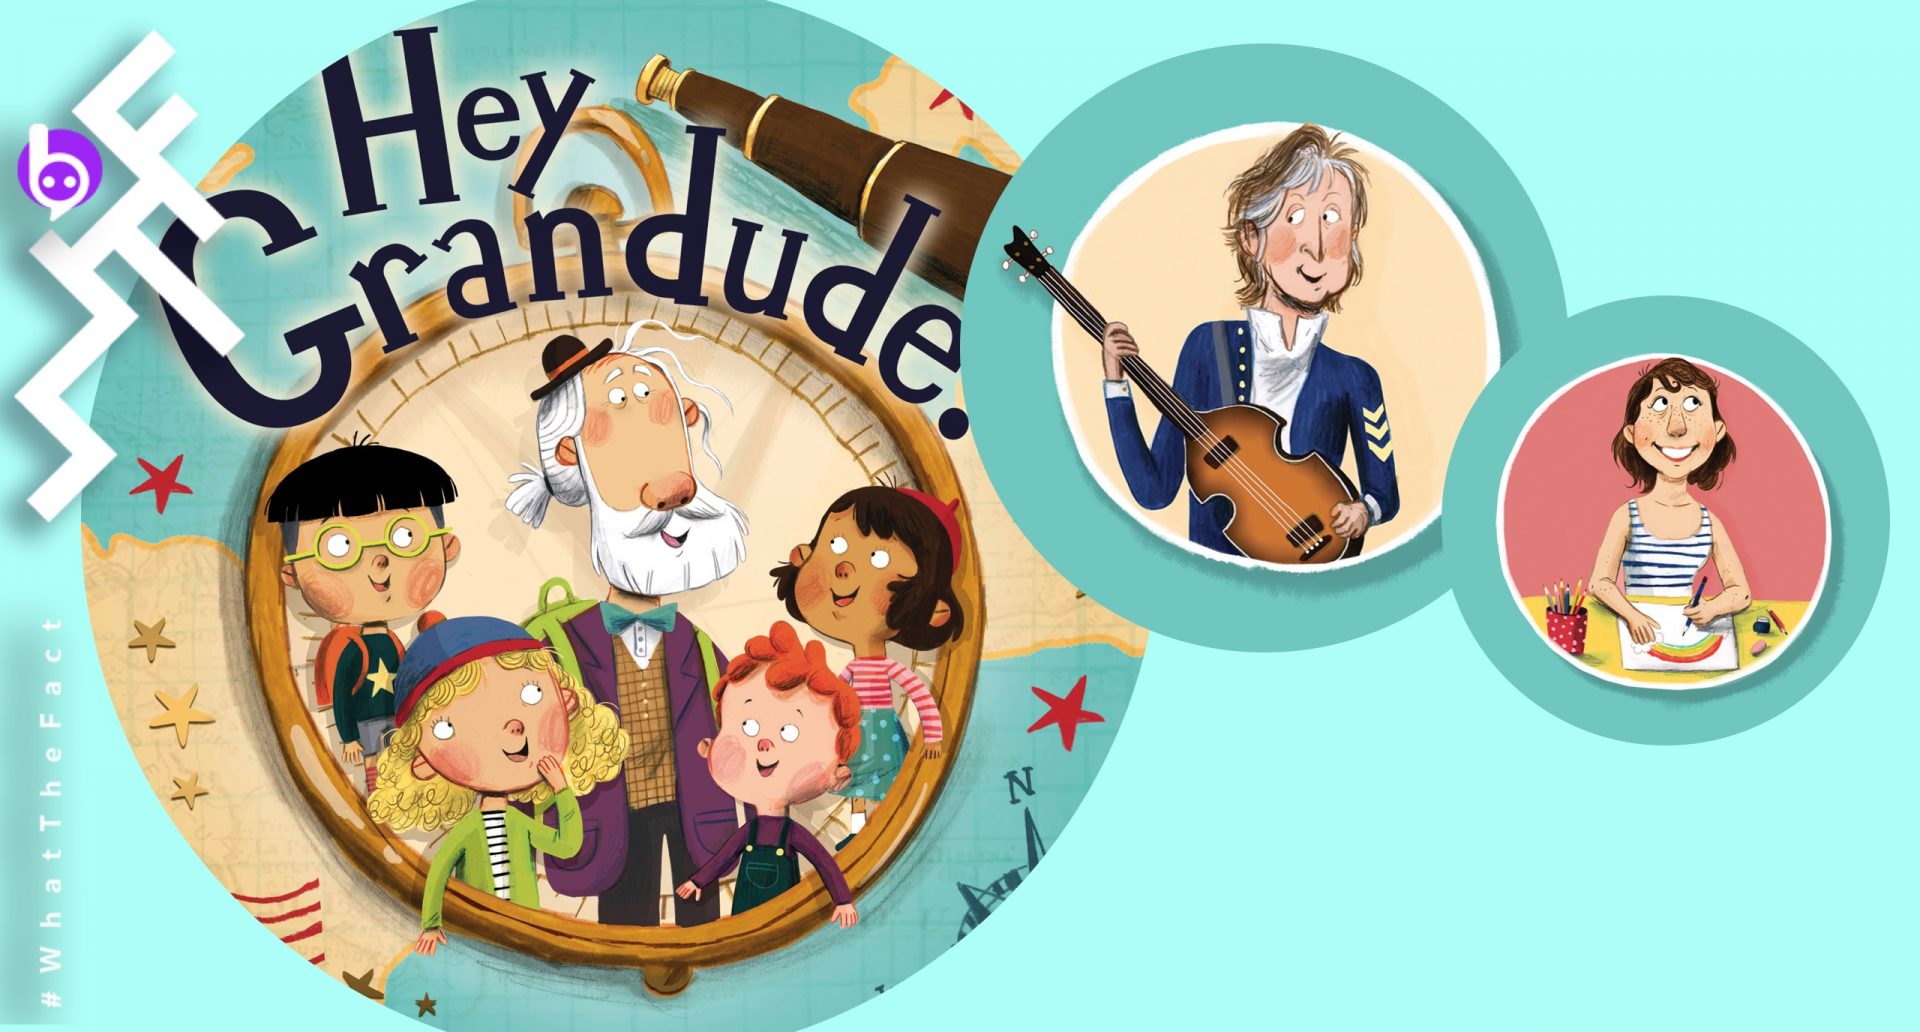 “Hey Grandude!” หนังสือนิทานสำหรับเด็กจากคุณตาใจดี “พอล แม็กคาร์ตนีย์”